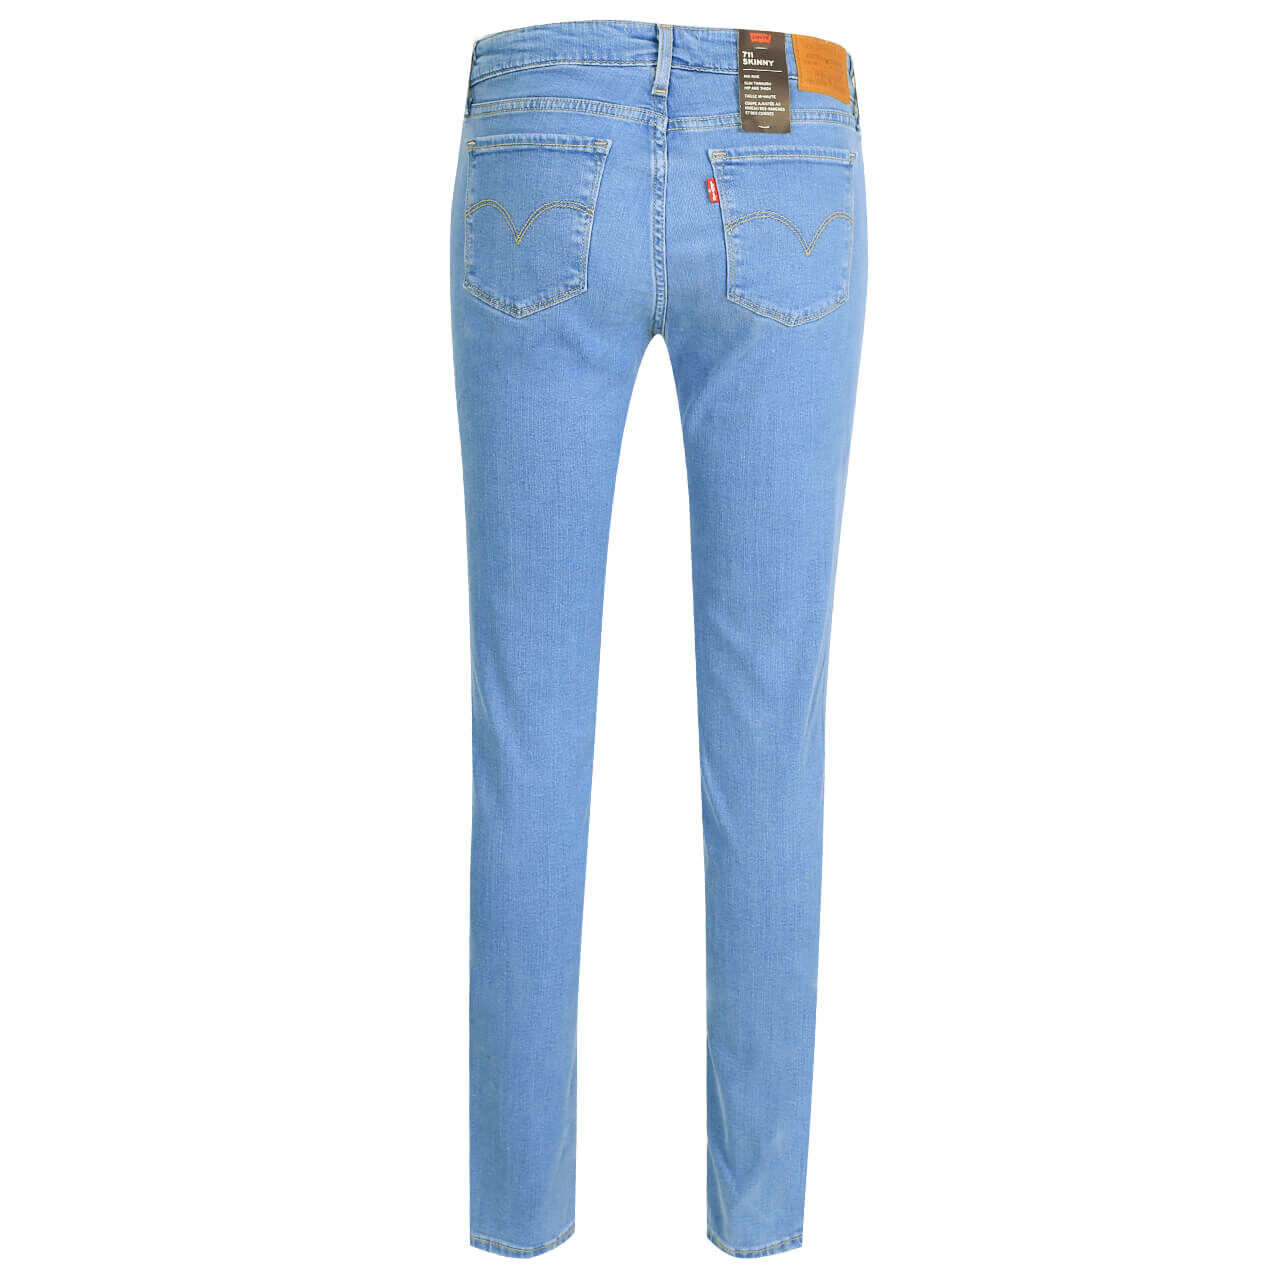 Levis Jeans 711 Skinny für Damen in Hellblau angewaschen, FarbNr.: 0601